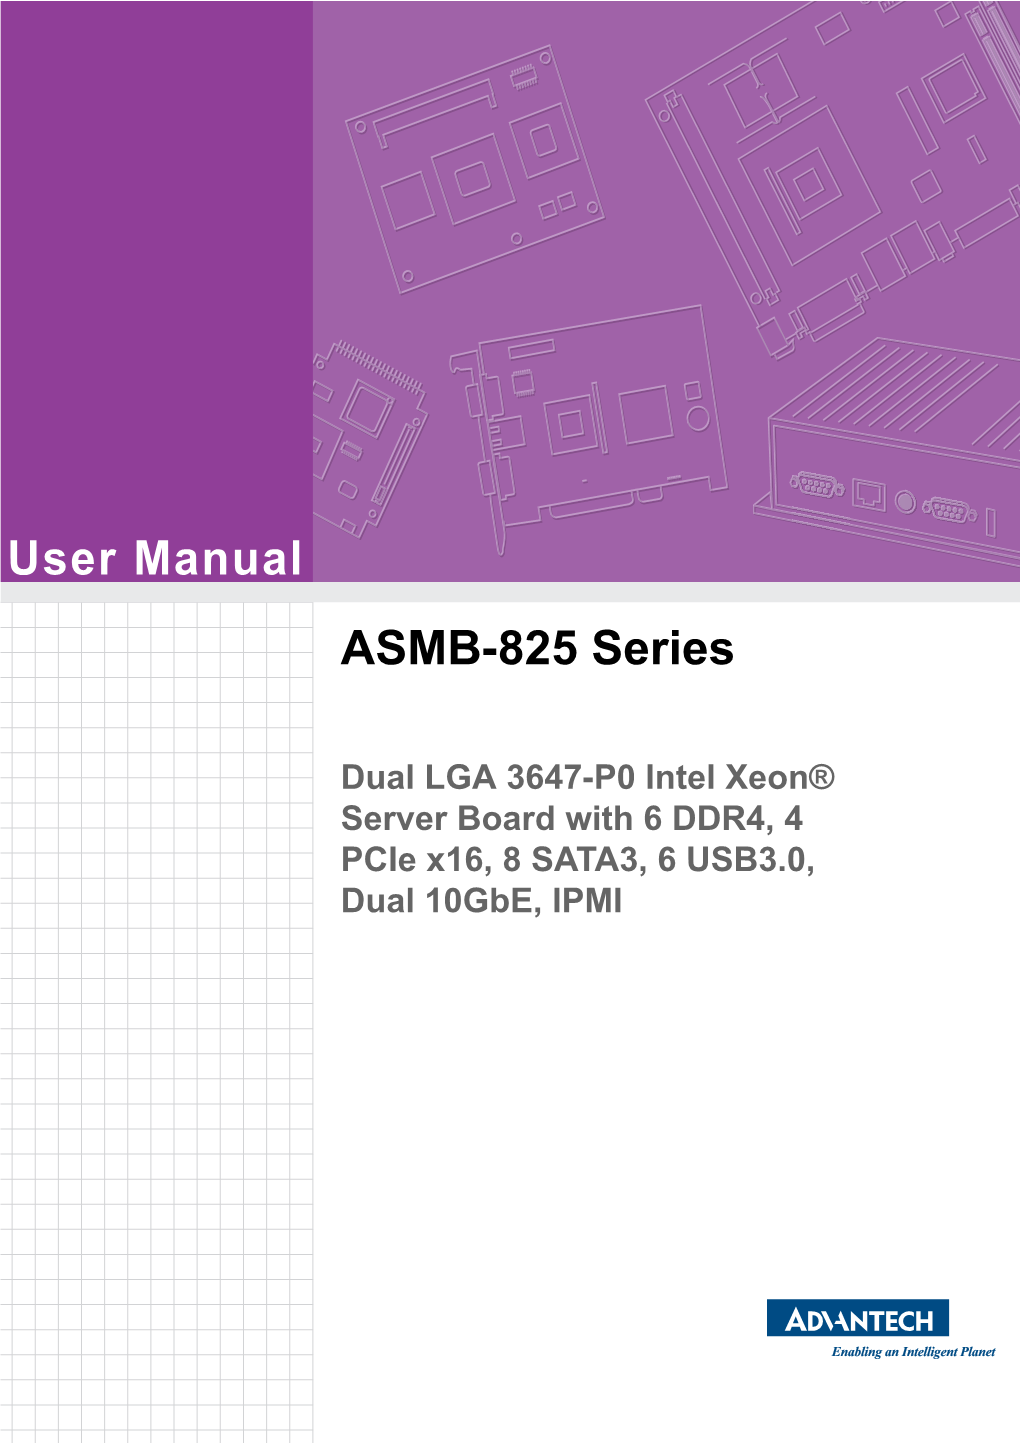 User Manual ASMB-825 Series